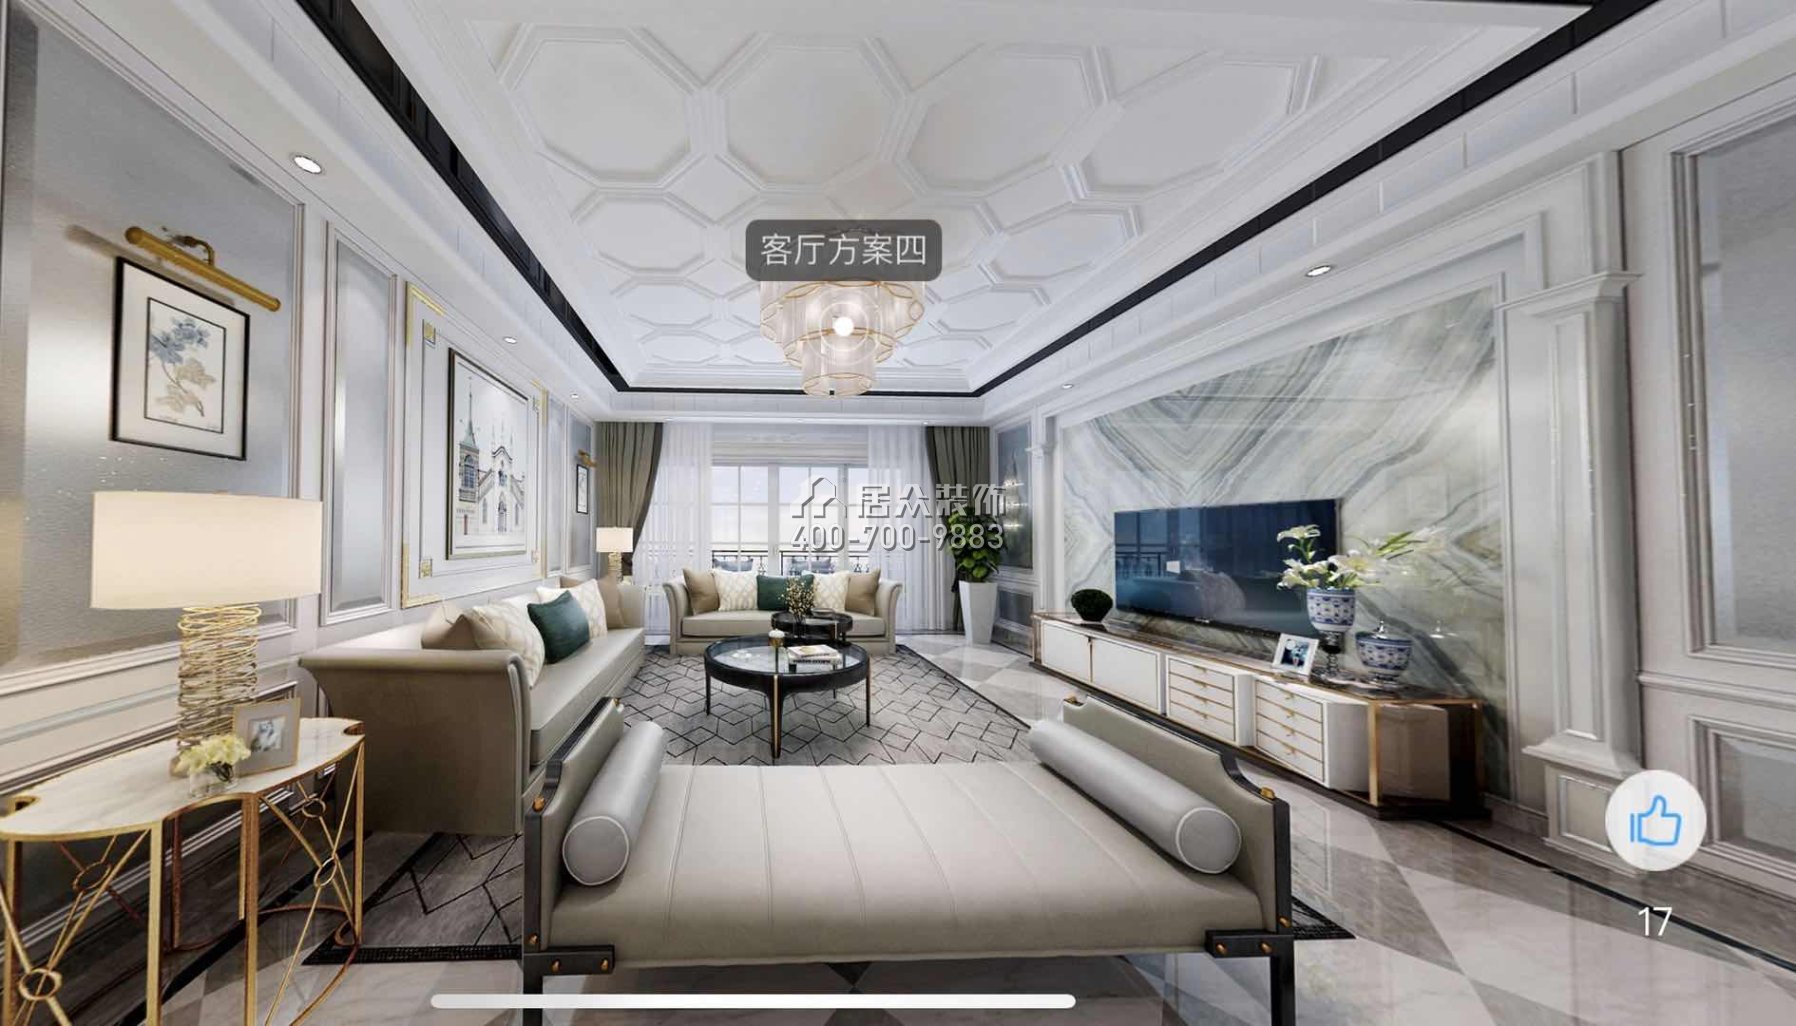 天骄峰景300平方米现代简约风格平层户型客厅装修效果图